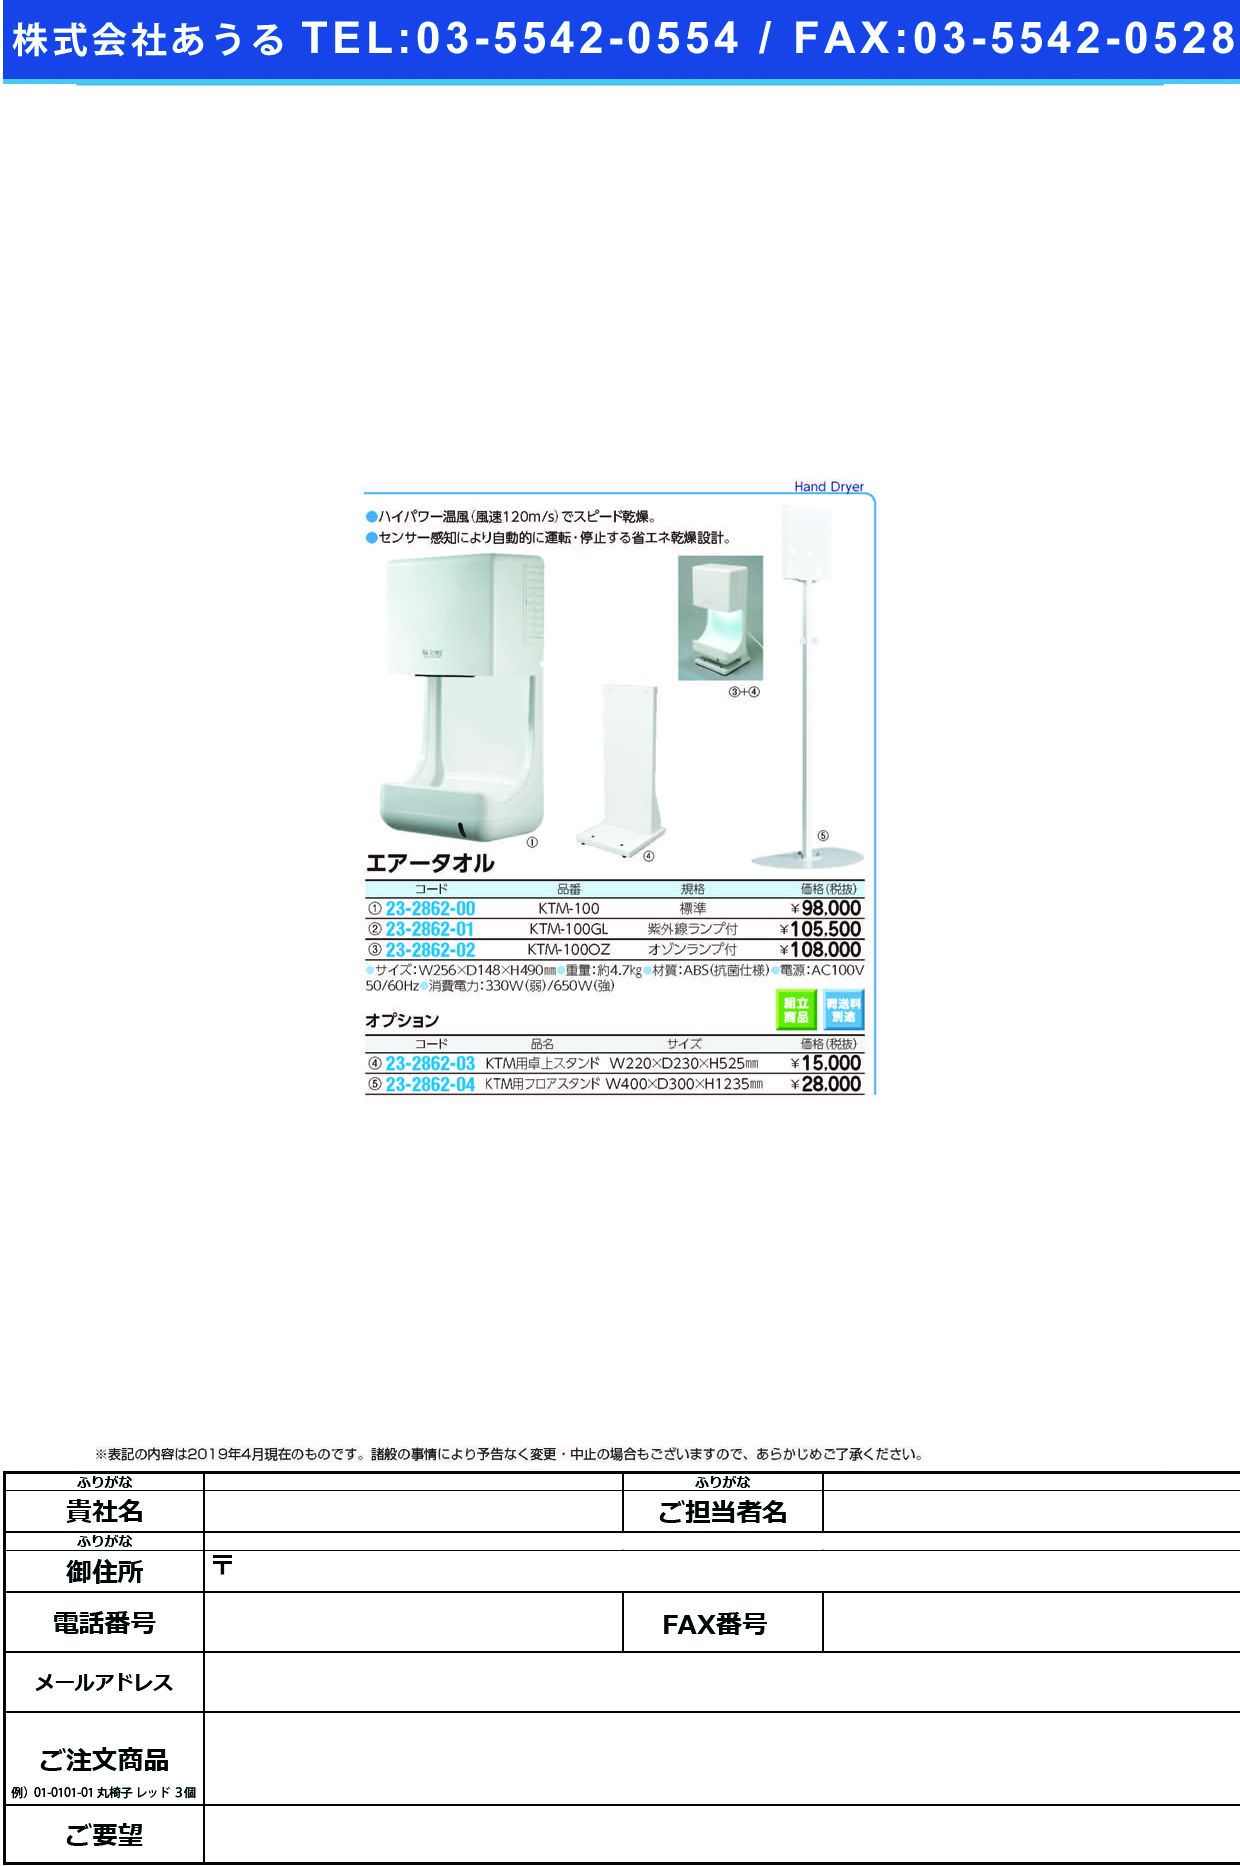 (23-2862-02)エアータオル（オゾンランプ４Ｗ付） KTM-100OZ ｴｱｰﾀｵﾙ(ｵｿﾞﾝﾗﾝﾌﾟ4Wﾂｷ)【1台単位】【2019年カタログ商品】